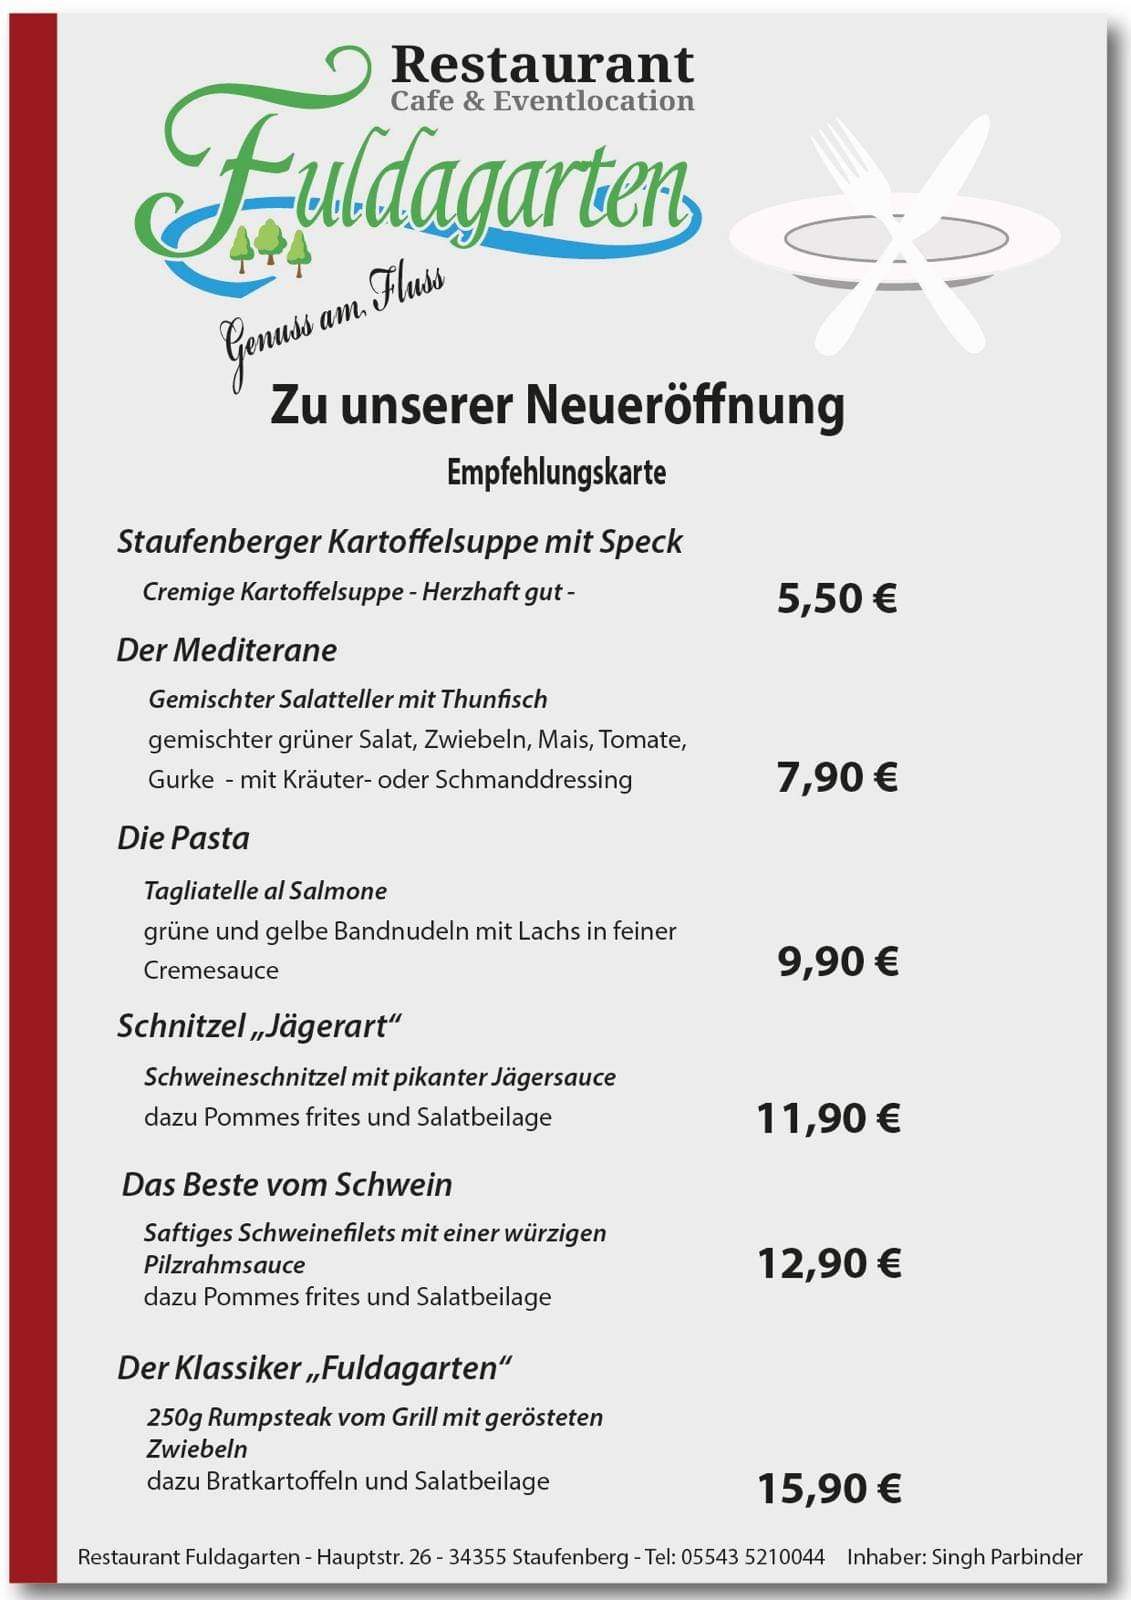 11/12 2018
und reichlich Gänsebuffet http://fuldagarten-spiekershausen.com/kulinarischer%20kalender.htm